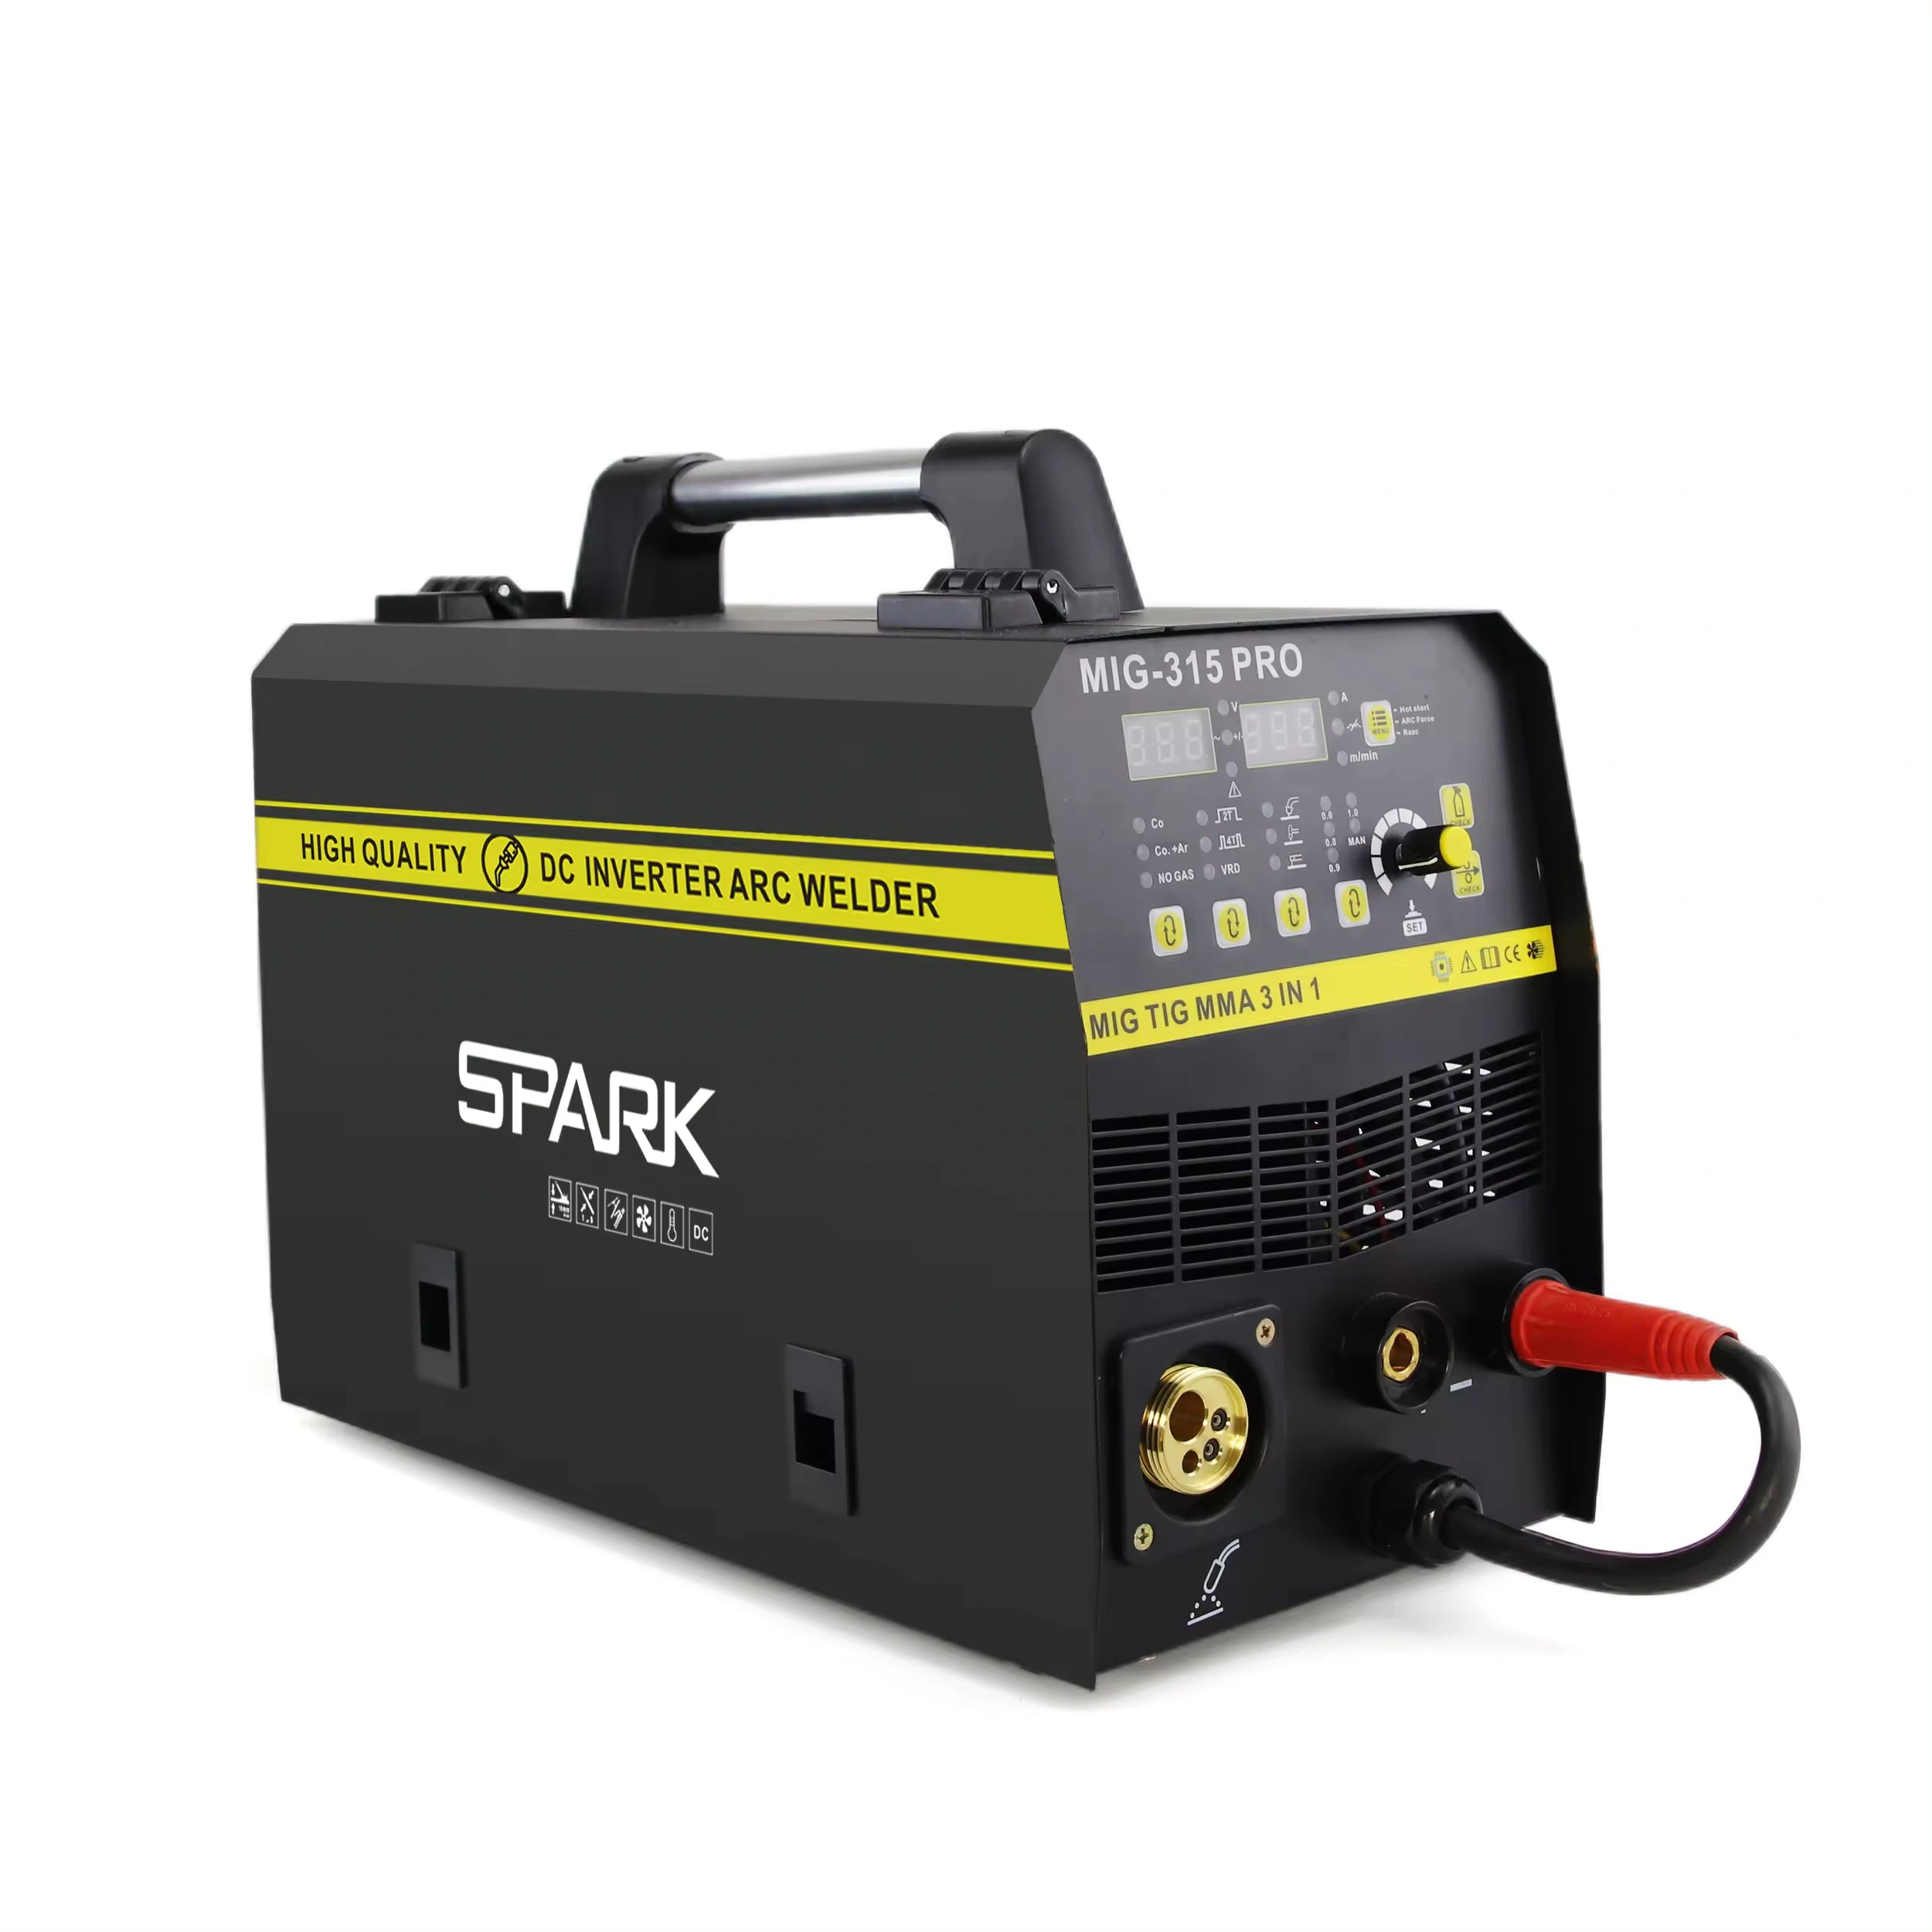 კემპის და შედუღების აპარატი CO2 გაზზე და FLUX მავრთულზე - SPARK MIG-315 Pro C02